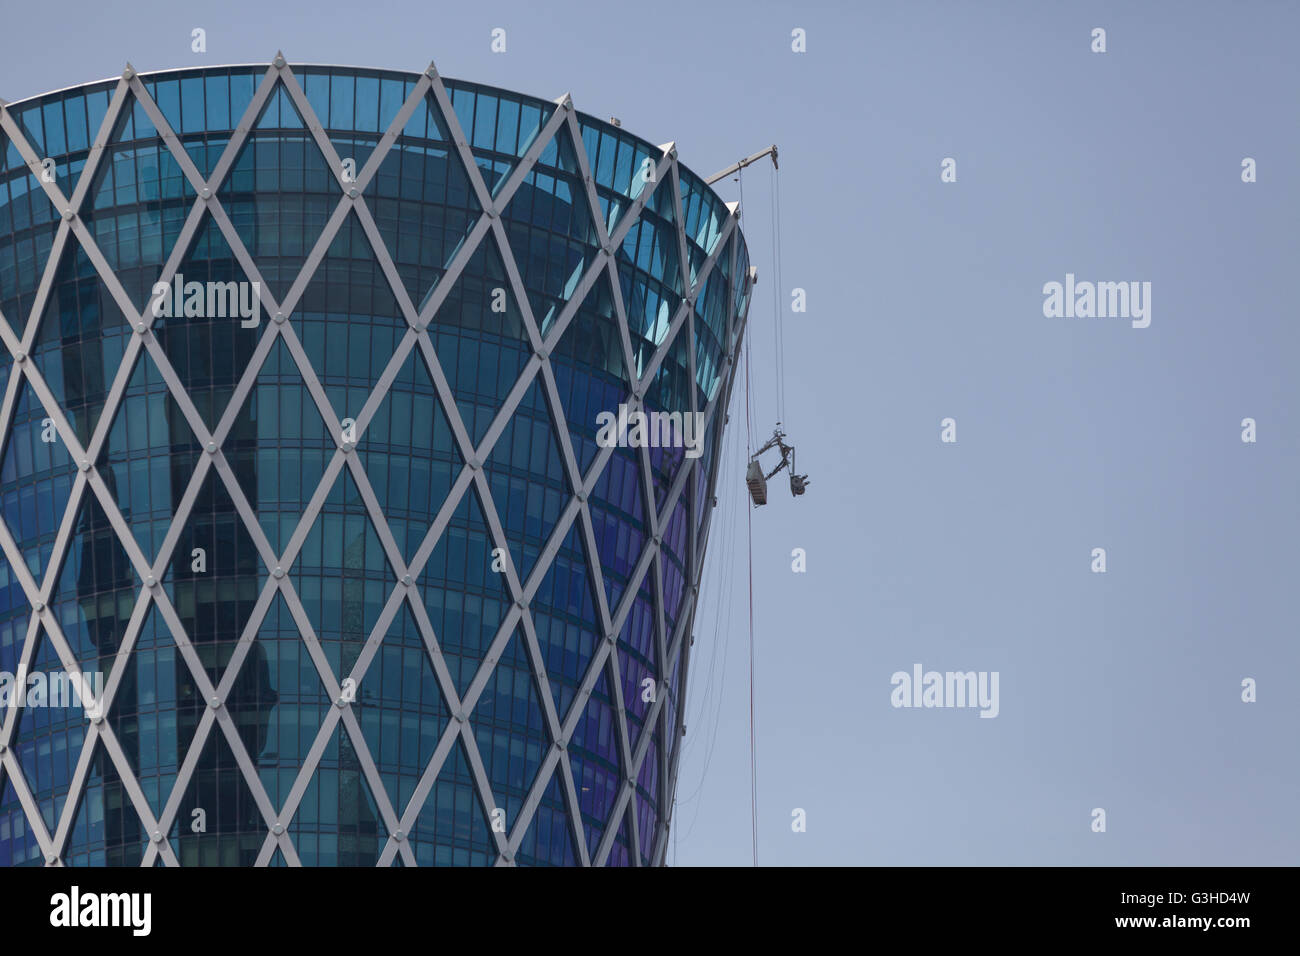 Spitze der Tornado Tower, West Bay, Doha. Reinigungsvorrichtung für Riemenscheibe und Drähte. Stockfoto